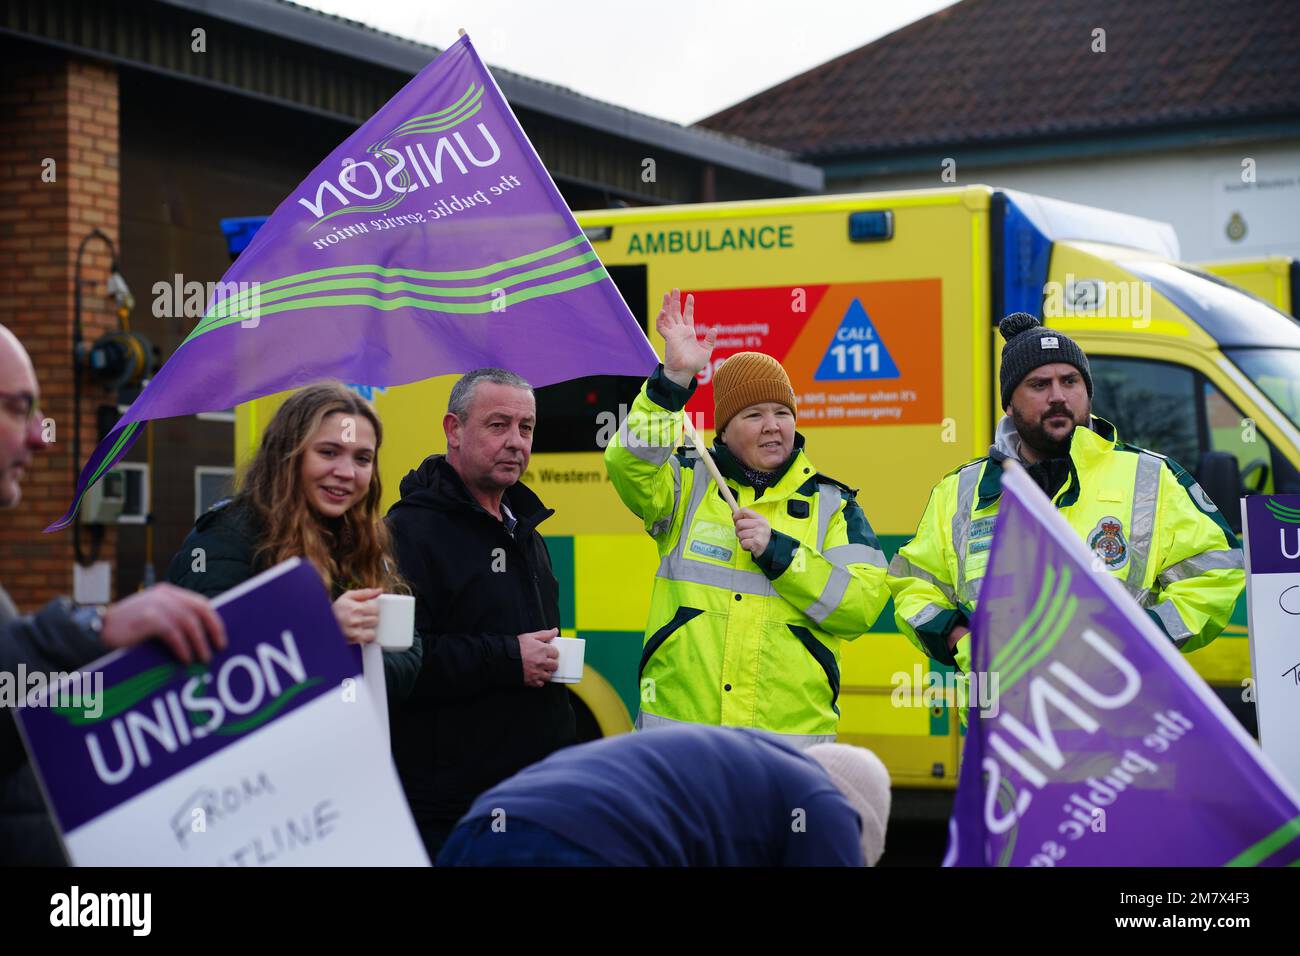 Los trabajadores de ambulancias en la línea de piquetes fuera de la estación de ambulancias Soundwell en Bristol, como miembros de los sindicatos Unison y GMB, toman medidas de huelga sobre el pago y las condiciones que afectarán las llamadas que no amenazan la vida. Fecha de la fotografía: Miércoles 11 de enero de 2023. Foto de stock